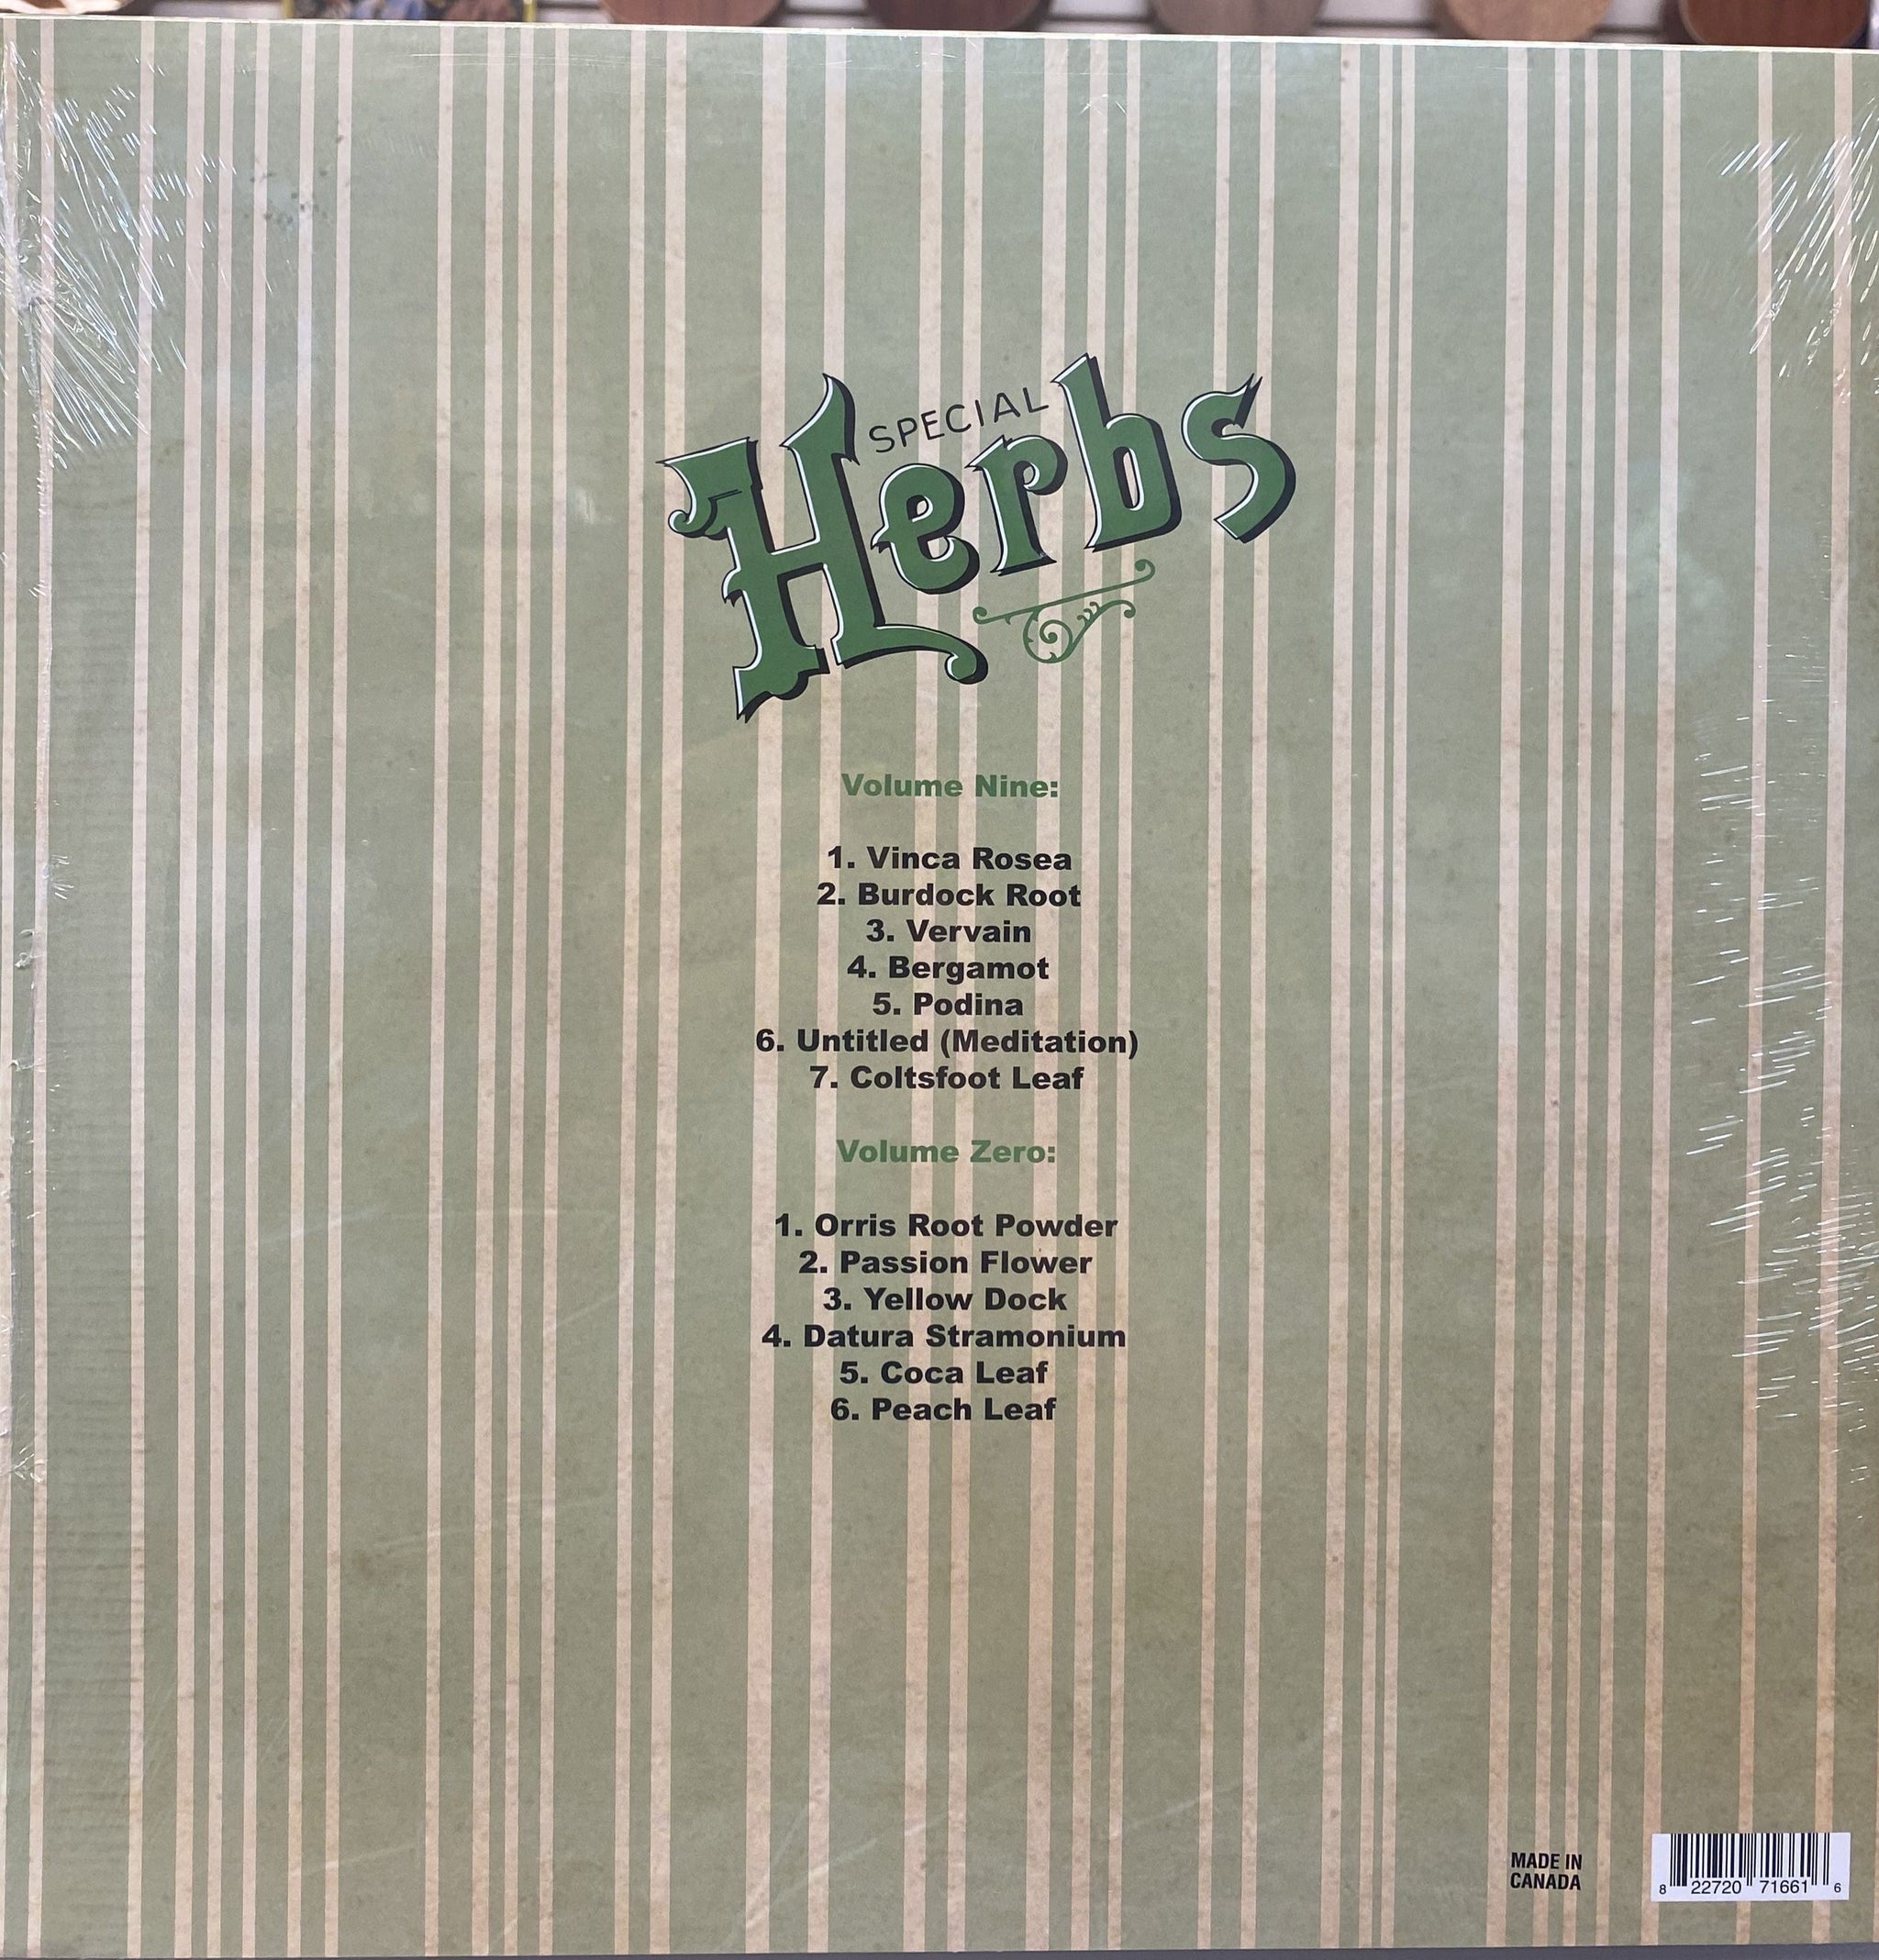 MF Doom - Special Herbs - Vols 9 & 0 - Vinyl LP Record